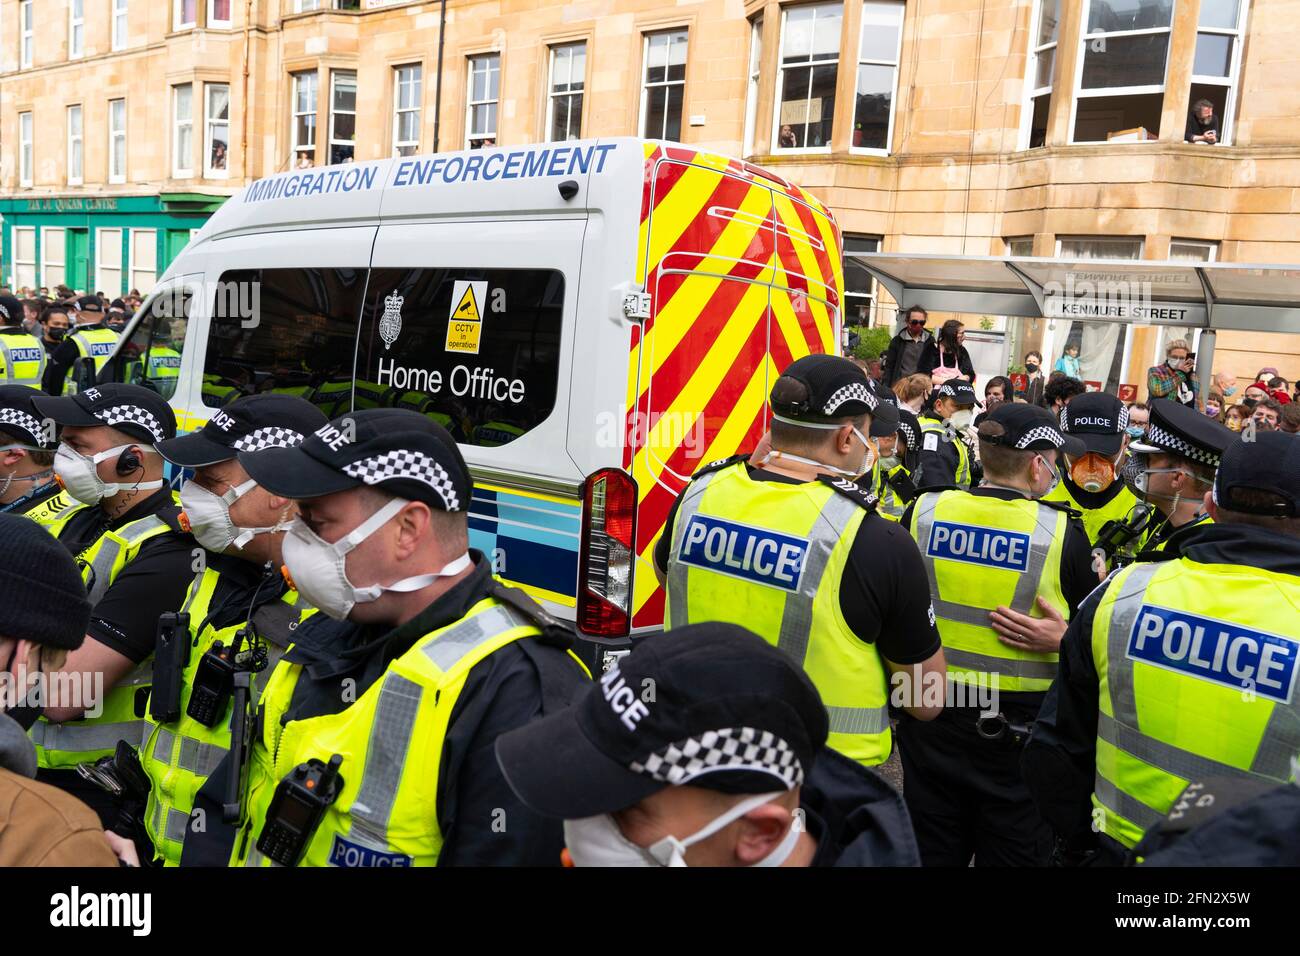 Glasgow, Escocia, Reino Unido. 13th de mayo de 2021. Aproximadamente a las 5,30 de la tarde, la policía liberó a dos hombres de un vehículo de detención del Ministerio del Interior. Acompañados por el abogado Aamer Anwar, los hombres caminaron a una mezquita cercana rodeada por cientos de policías y partidarios que habían estado rodeando el vehículo y sentados en la calle. Pic; El vehículo de aplicación de la ley de inmigración de la oficina del hogar que contiene dos hombres está rodeado por manifestantes. Crédito: Iain Masterton/Alamy Live News Foto de stock